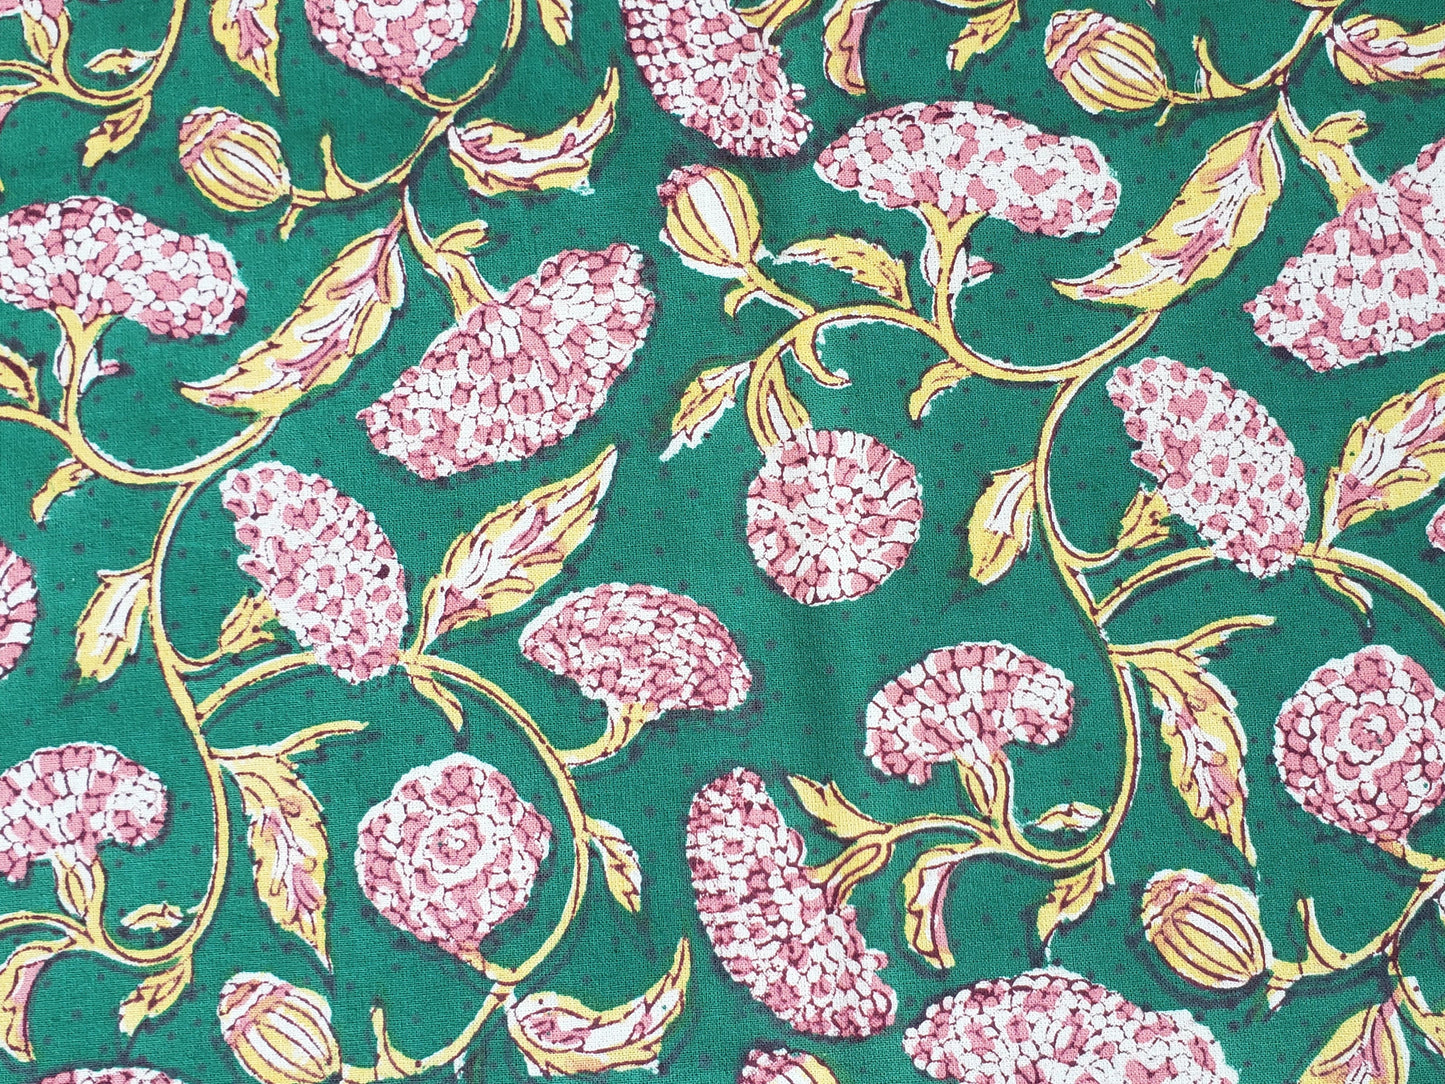 Detalle de estampado de sobrecama 100% algodón estampado a mano, base verde obscuro con flores rosas. Hecho en la India.